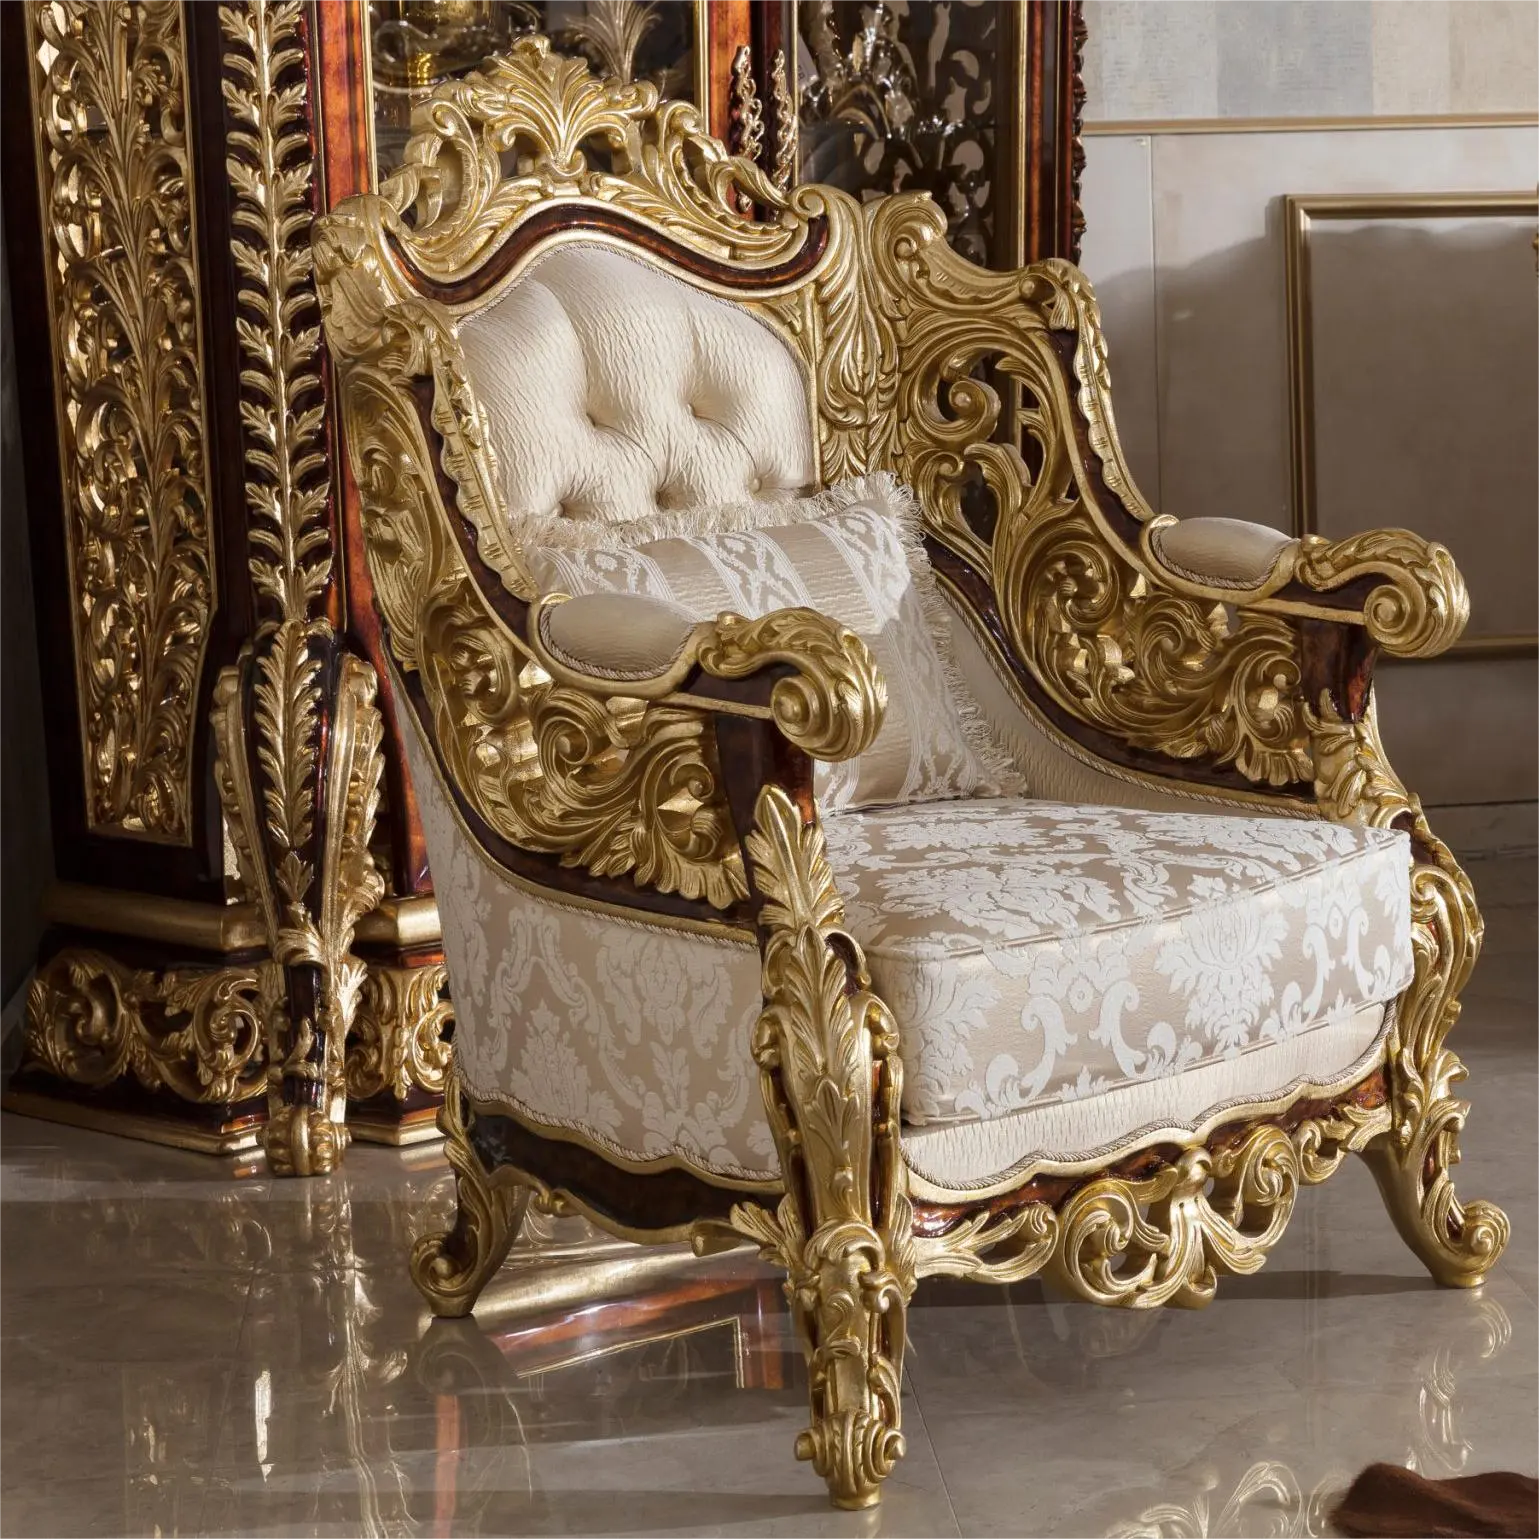 Mobili da soggiorno dal Design classico in stile reale europeo 100% poltrona in tessuto personalizzata con finitura in lamina d'oro intagliata a mano